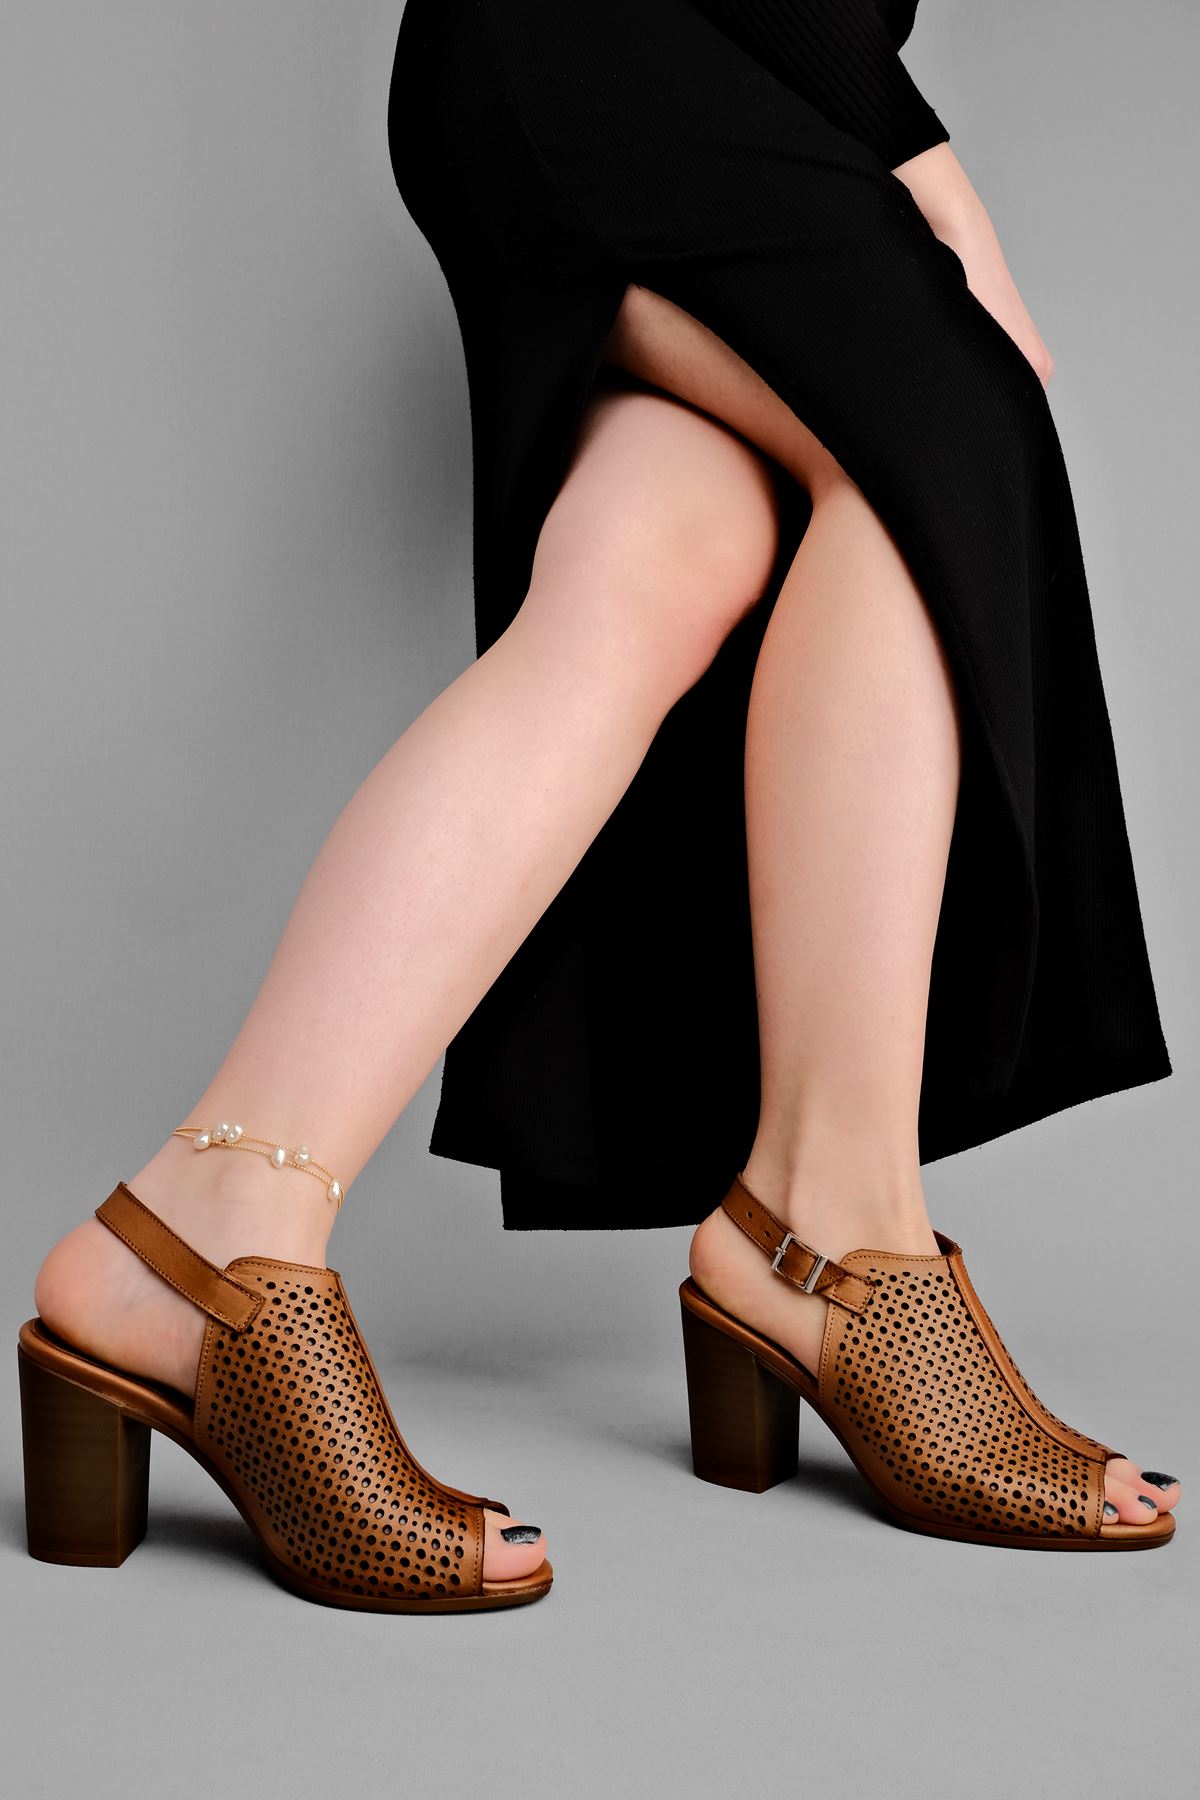 Vesta Kadın Hakiki Deri Topuklu Ayakkabı Üstü Delikli-Taba